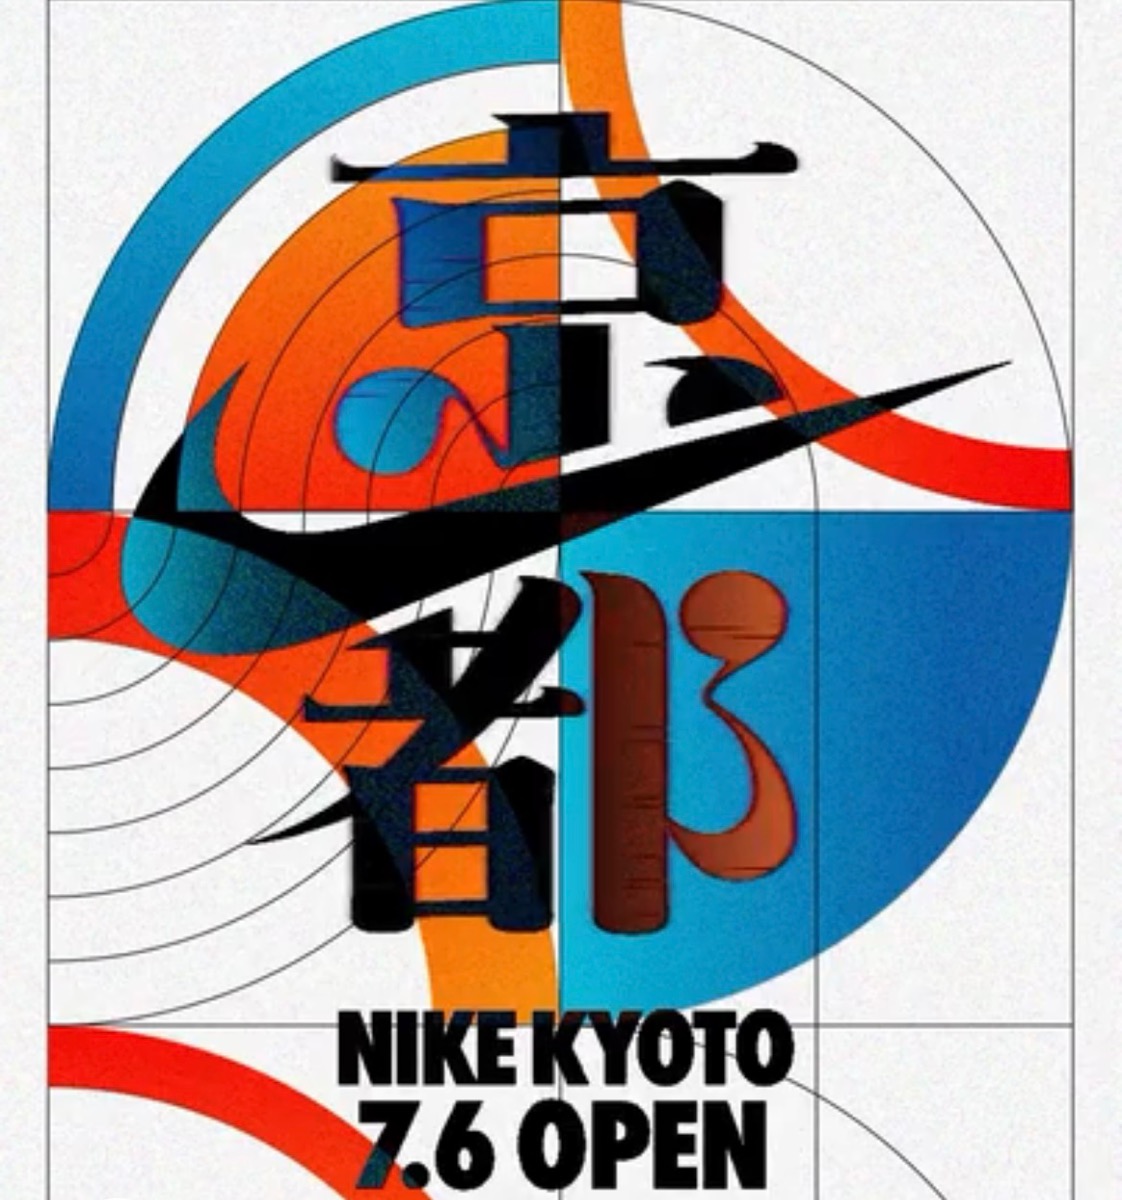 ナイキの新ストア『NIKE KYOTO』が7月6日より京都河原町にオープン